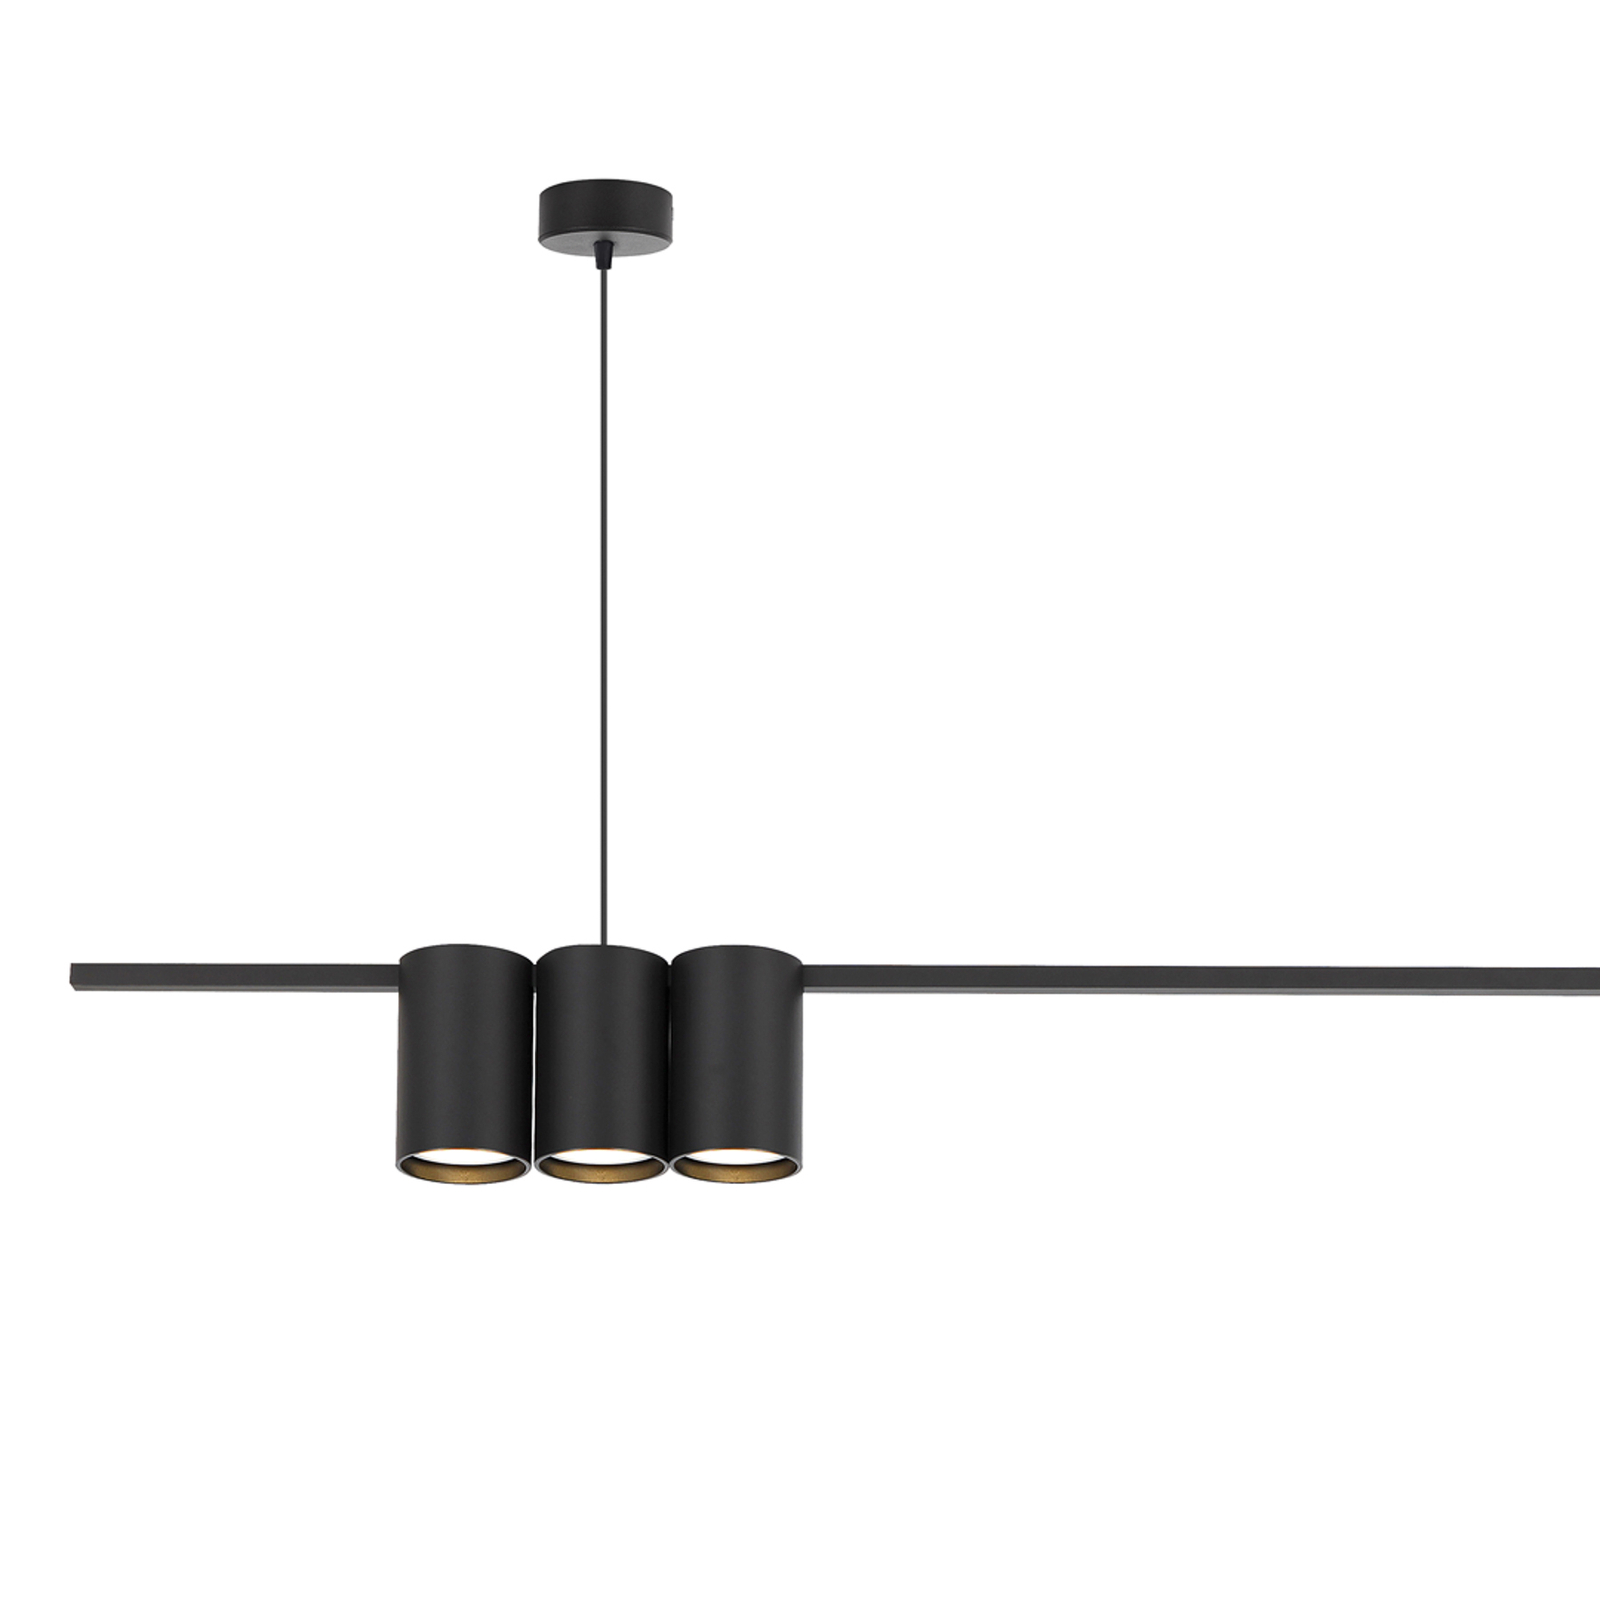 Lampă suspendată Genesis, aluminiu, negru, 5 x GU10, lungime 100 cm